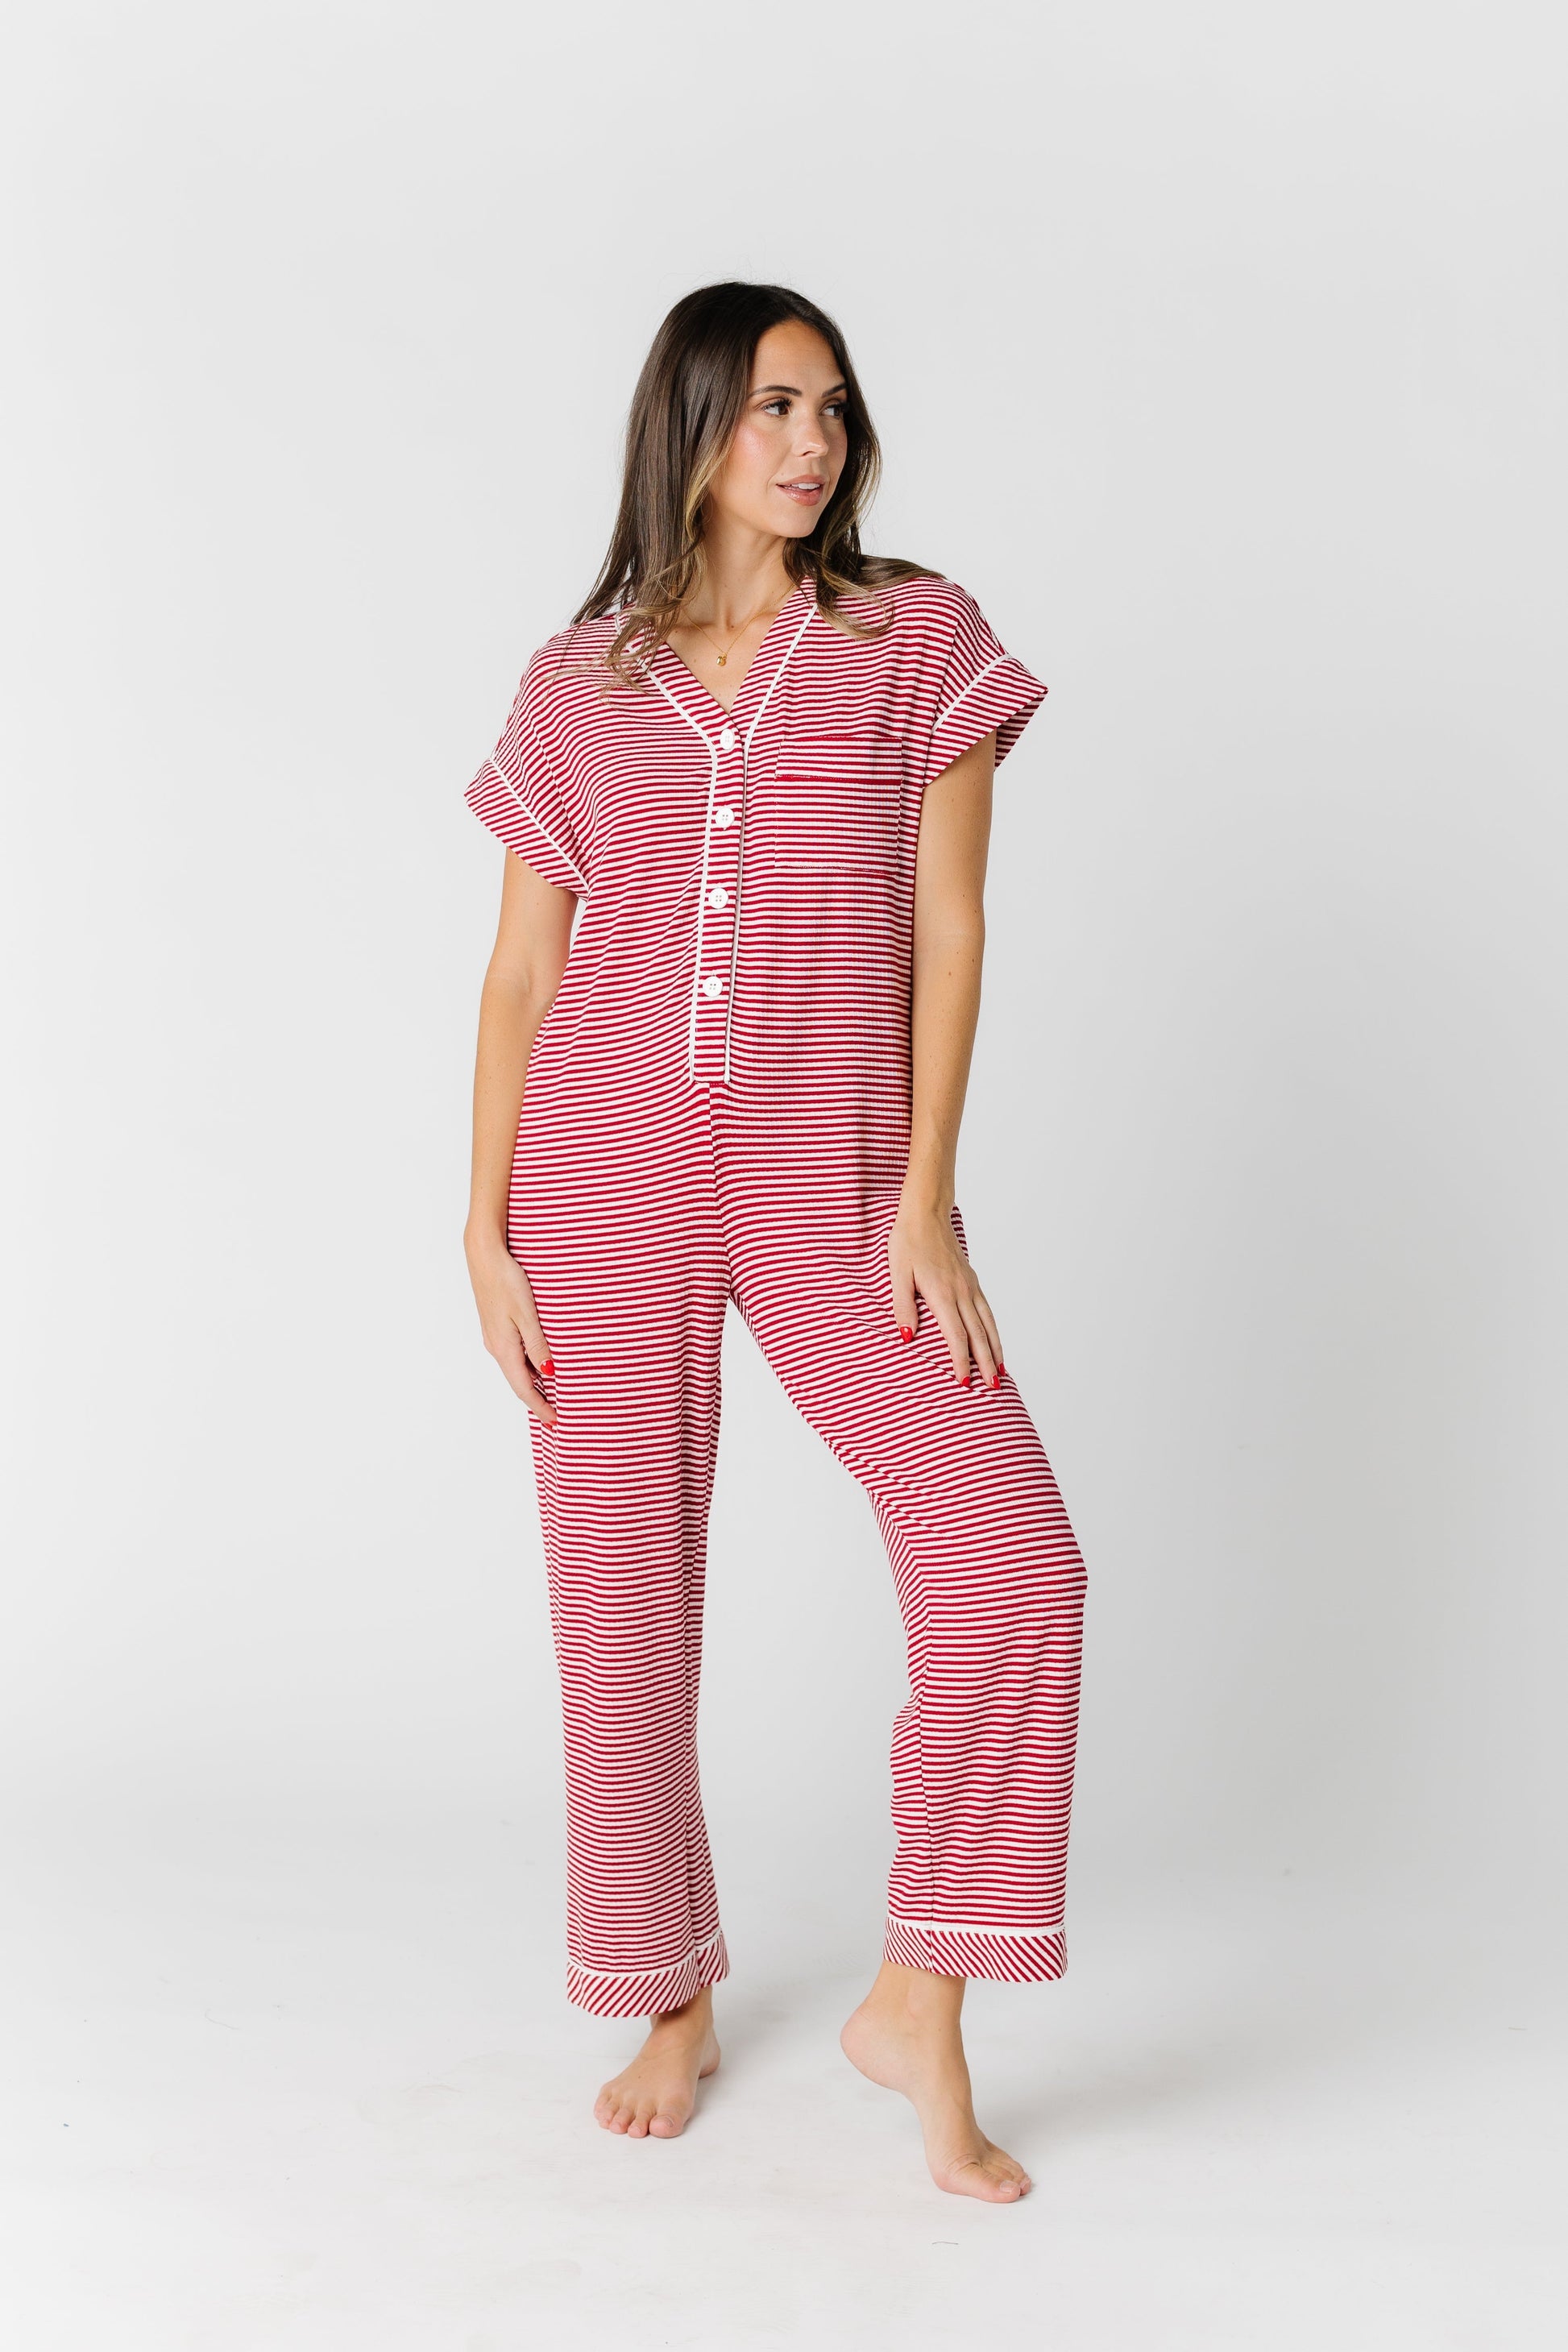 Striped Pajama Onesie